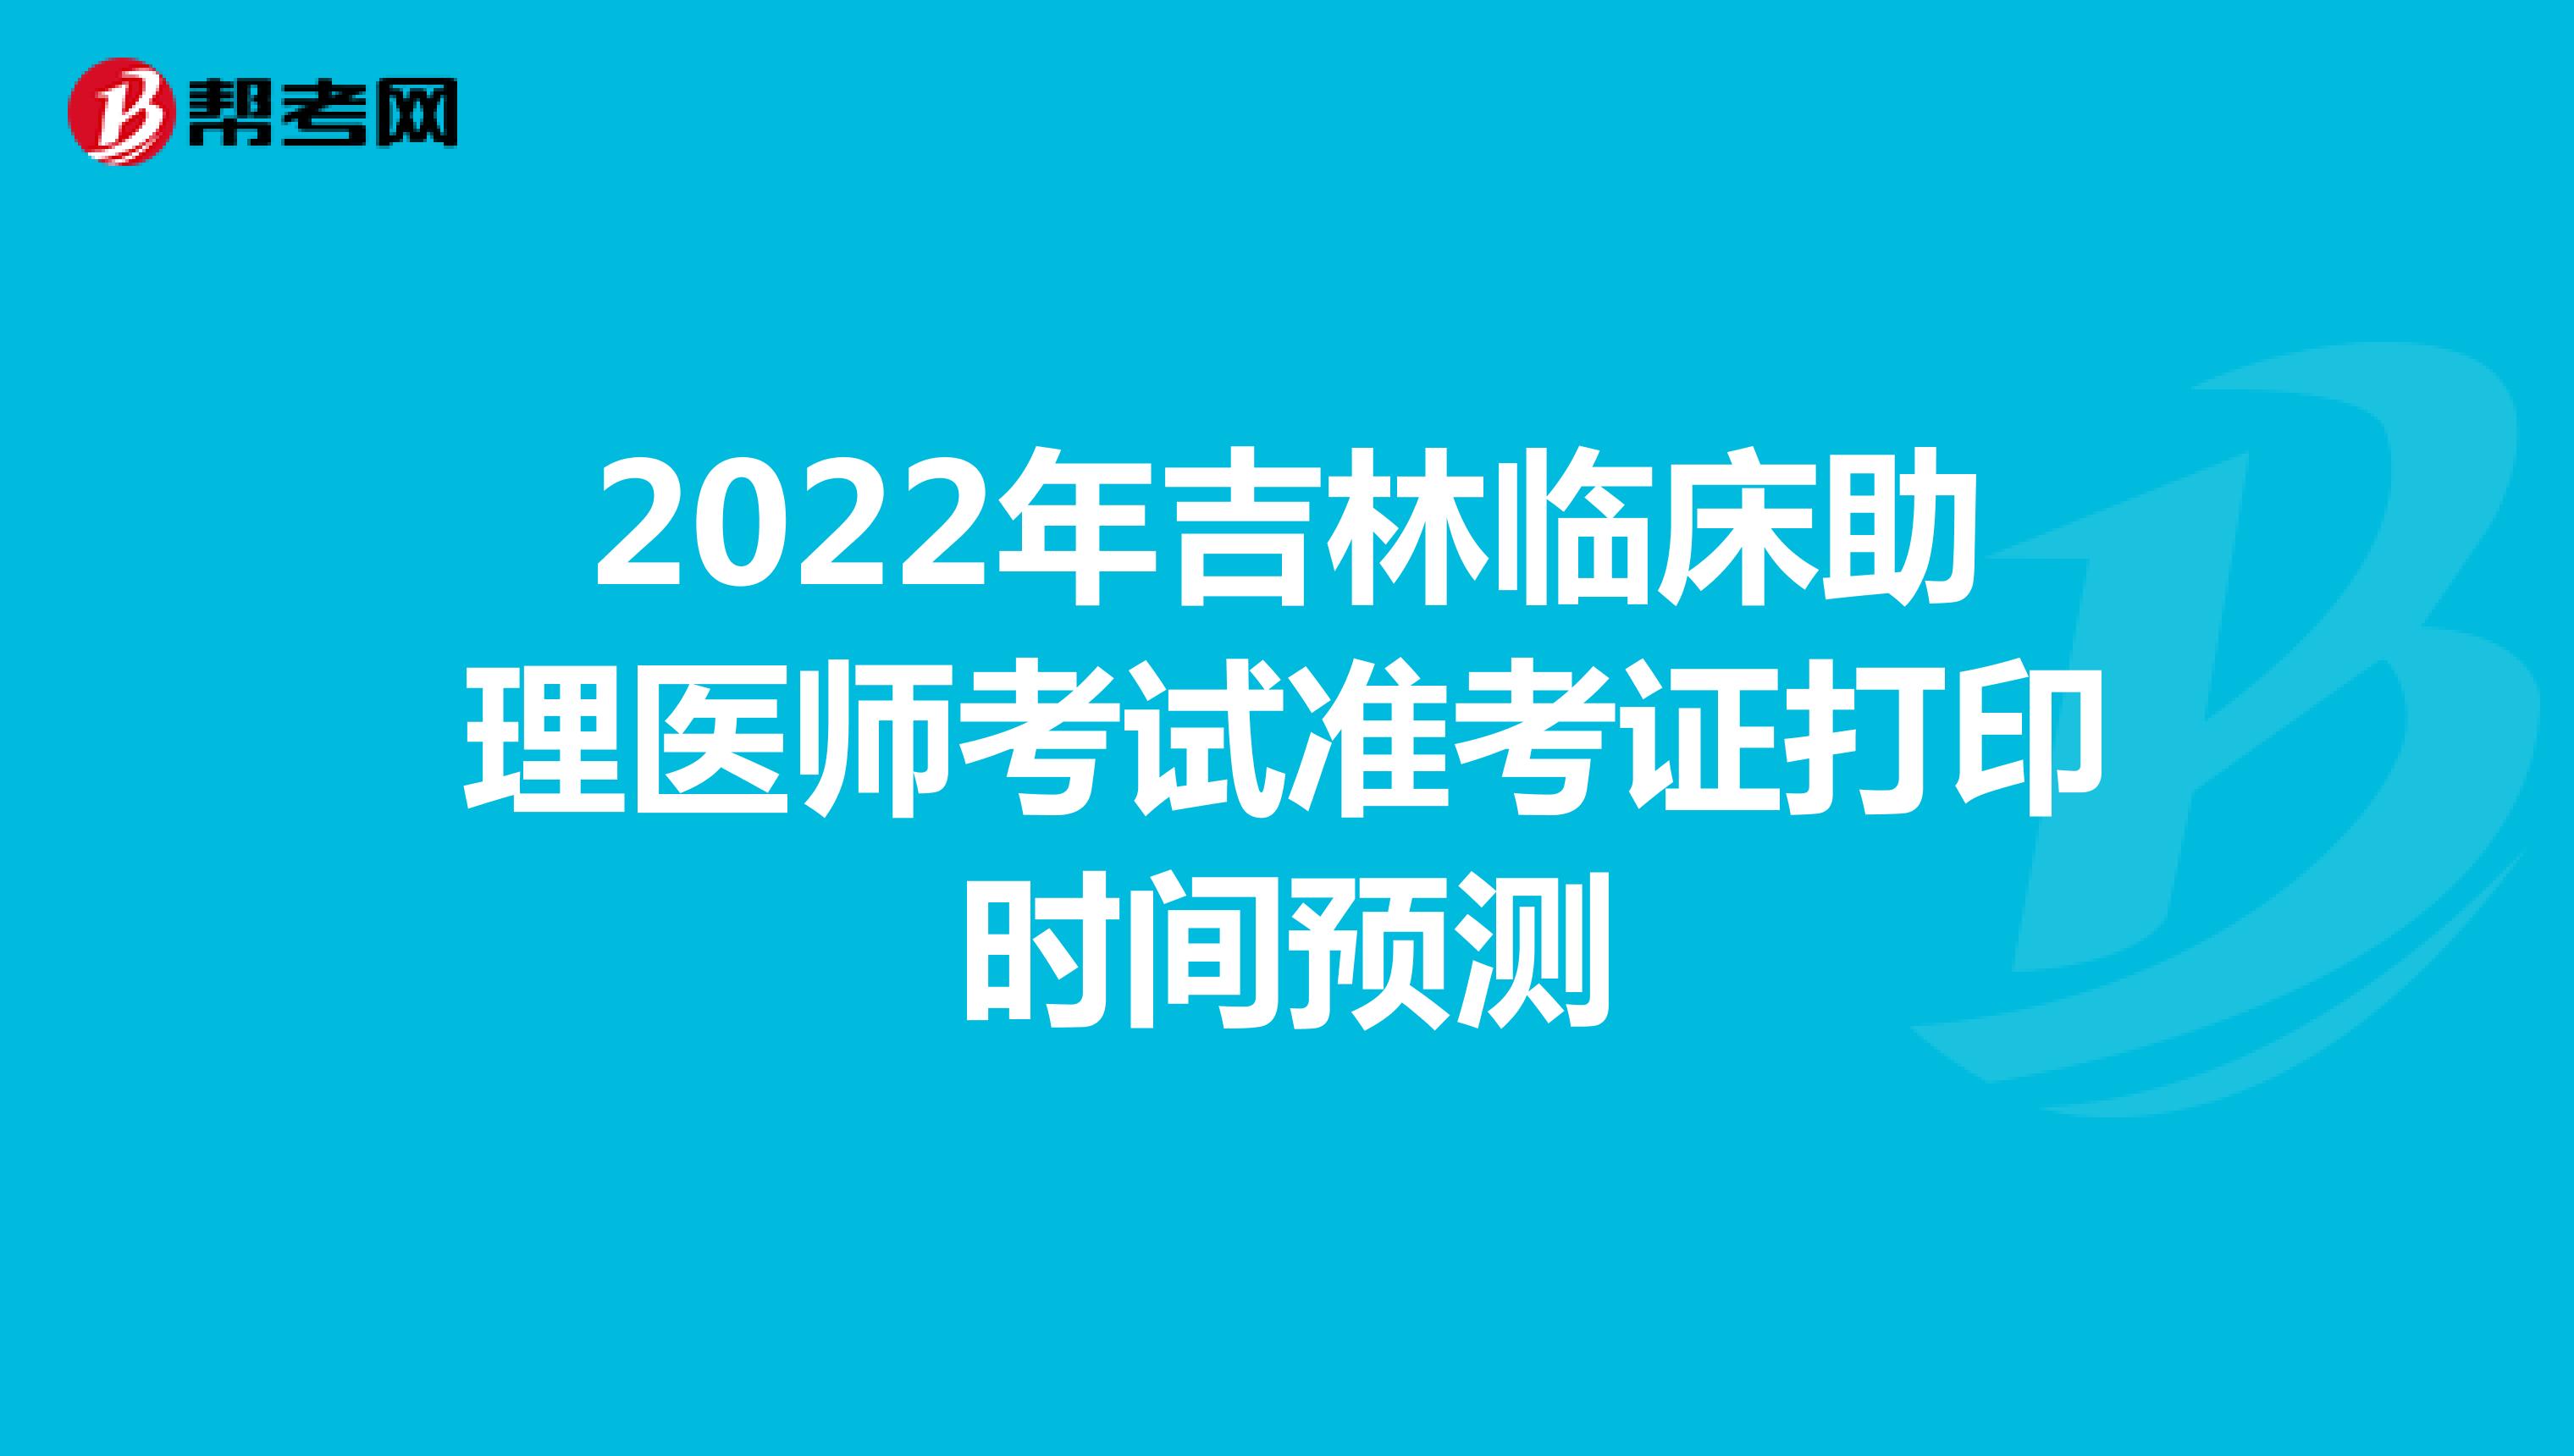 2022年吉林临床助理医师考试准考证打印时间预测